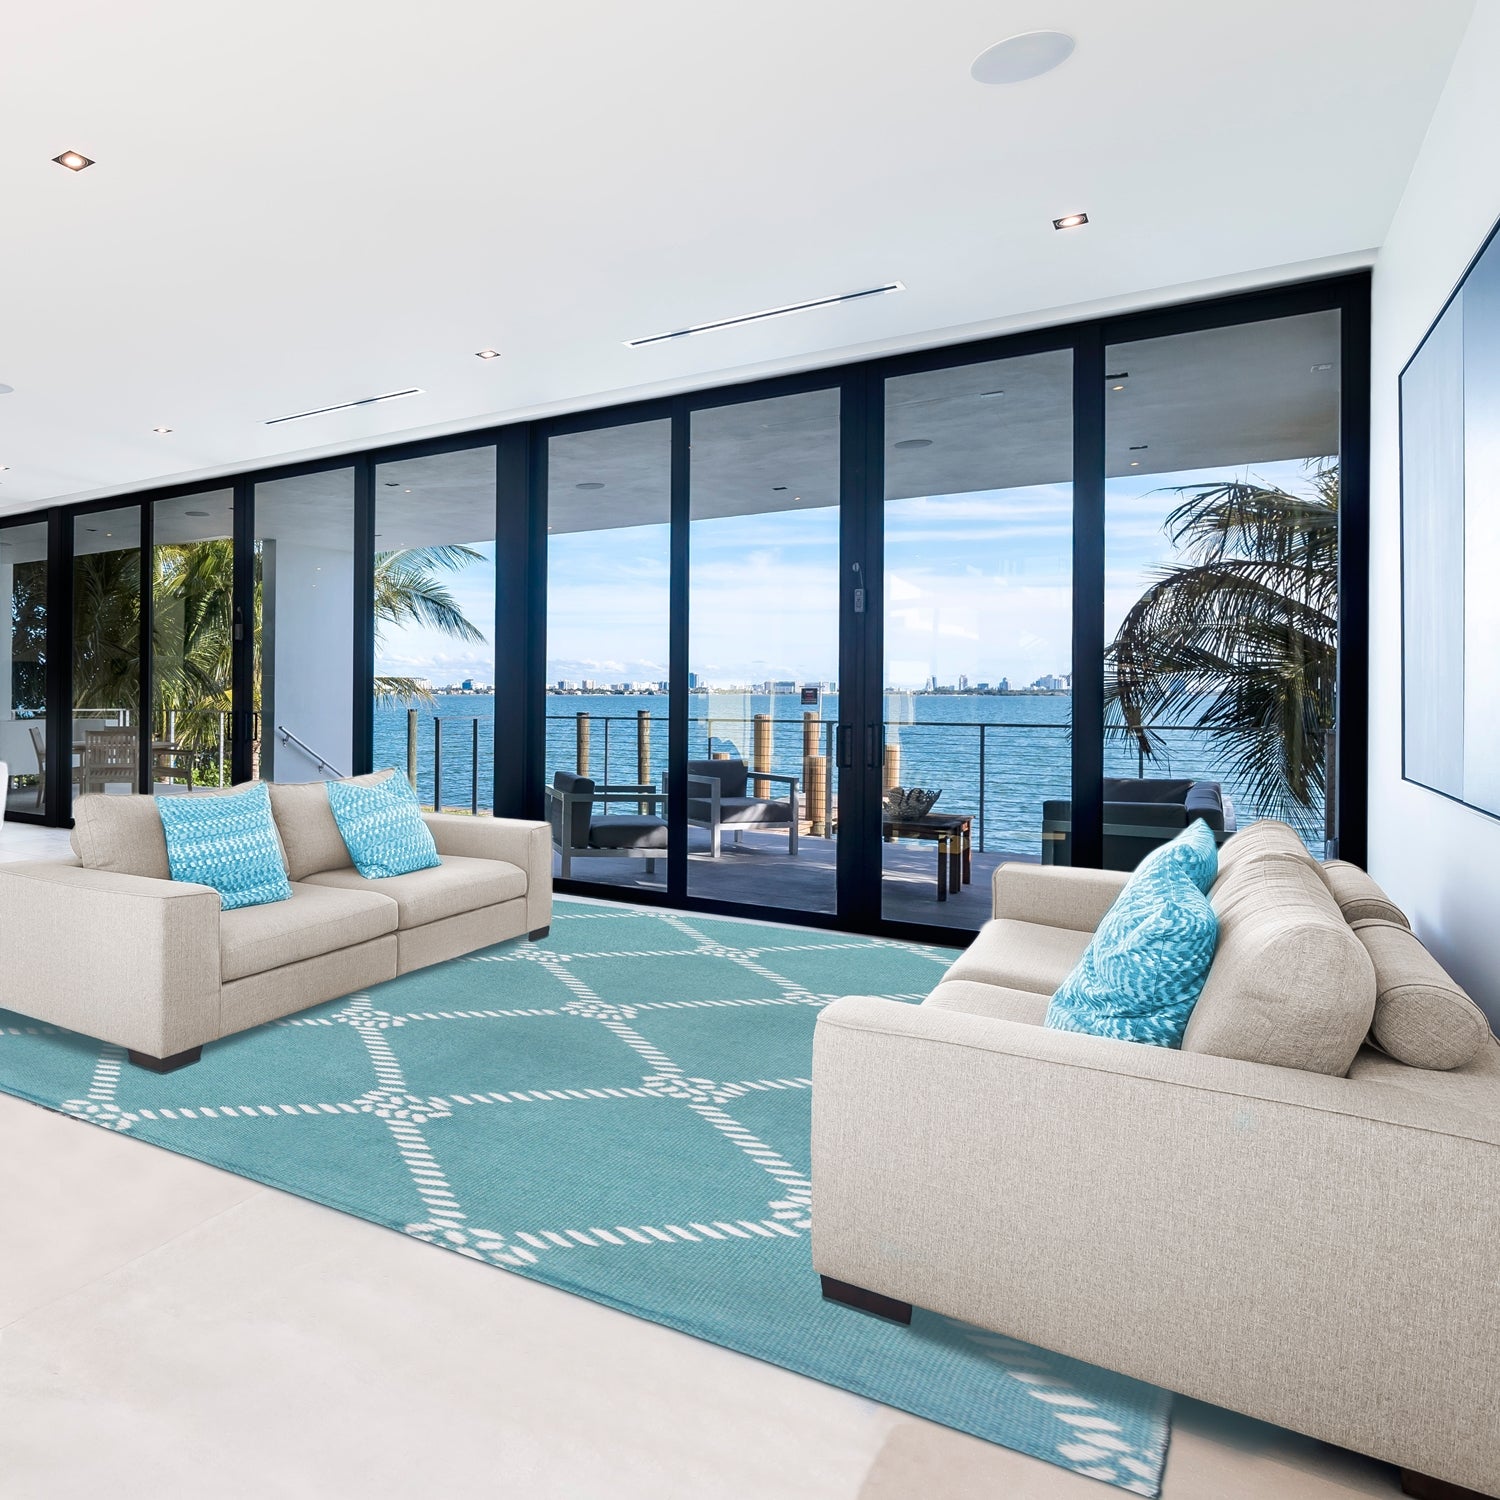 Superior Coastal Geometric Lattice Indoor Outdoor Luxurious Area Rug - Turquoise